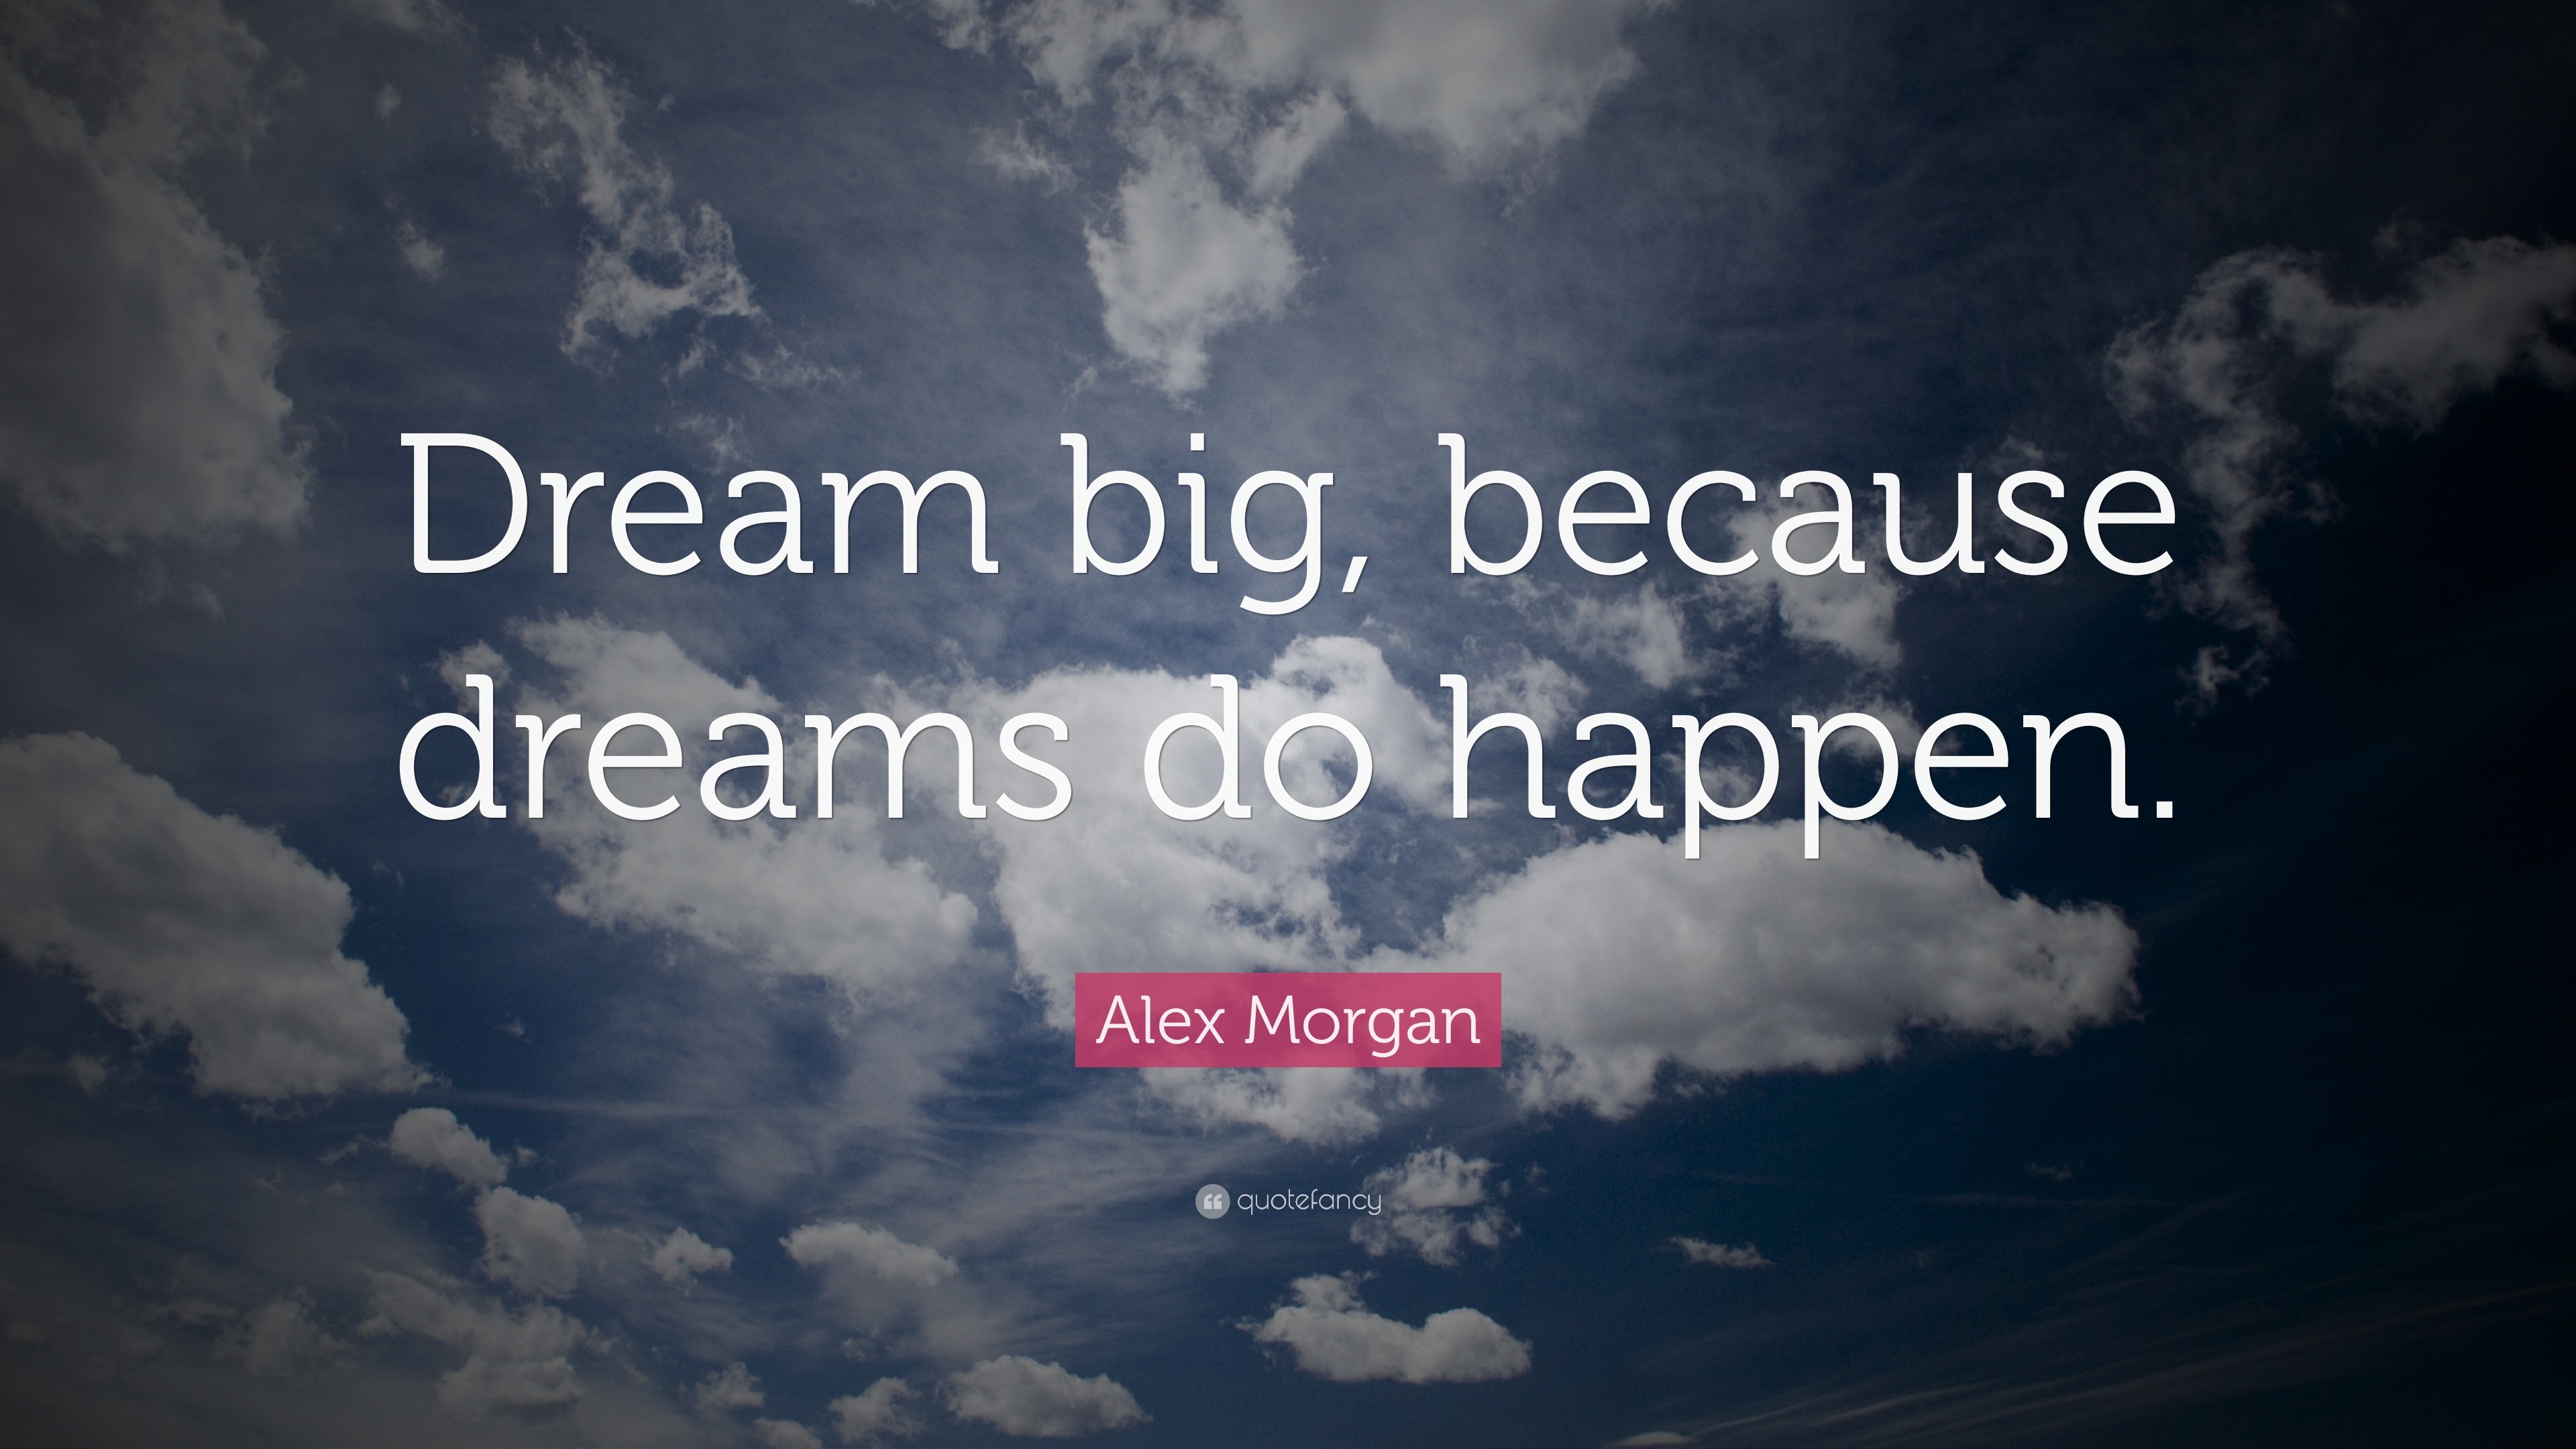 3840x2160 Alex Morgan Quote: “Dream big, because dreams do happen.”